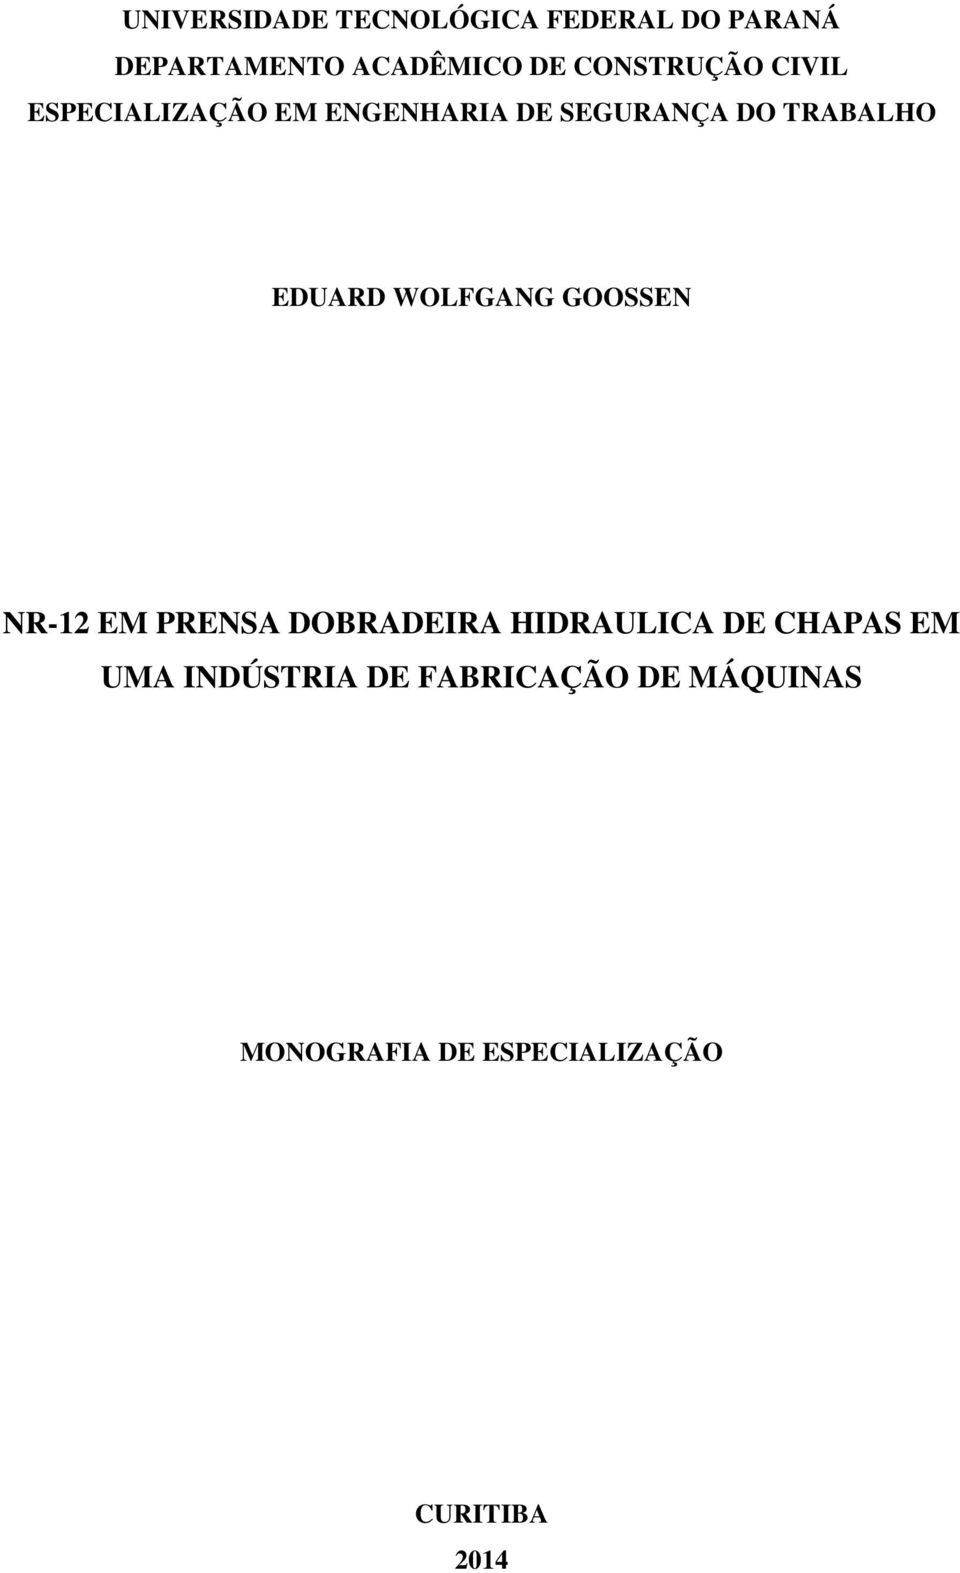 EDUARD WOLFGANG GOOSSEN NR-12 EM PRENSA DOBRADEIRA HIDRAULICA DE CHAPAS EM